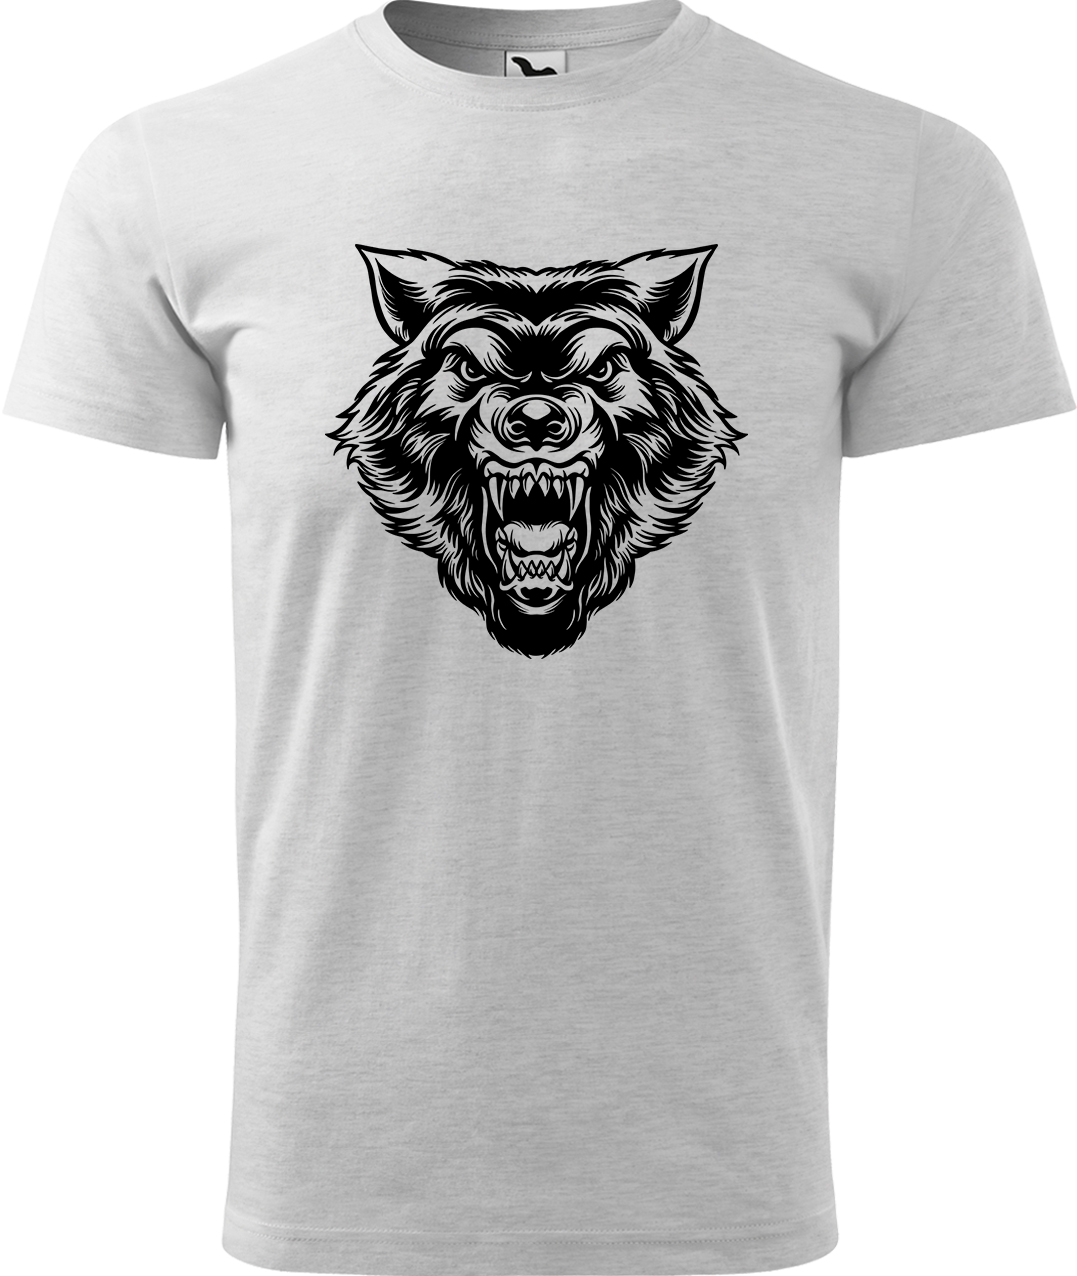 Pánské tričko s vlkem - Rozzuřený vlk Velikost: S, Barva: Světle šedý melír (03), Střih: pánský